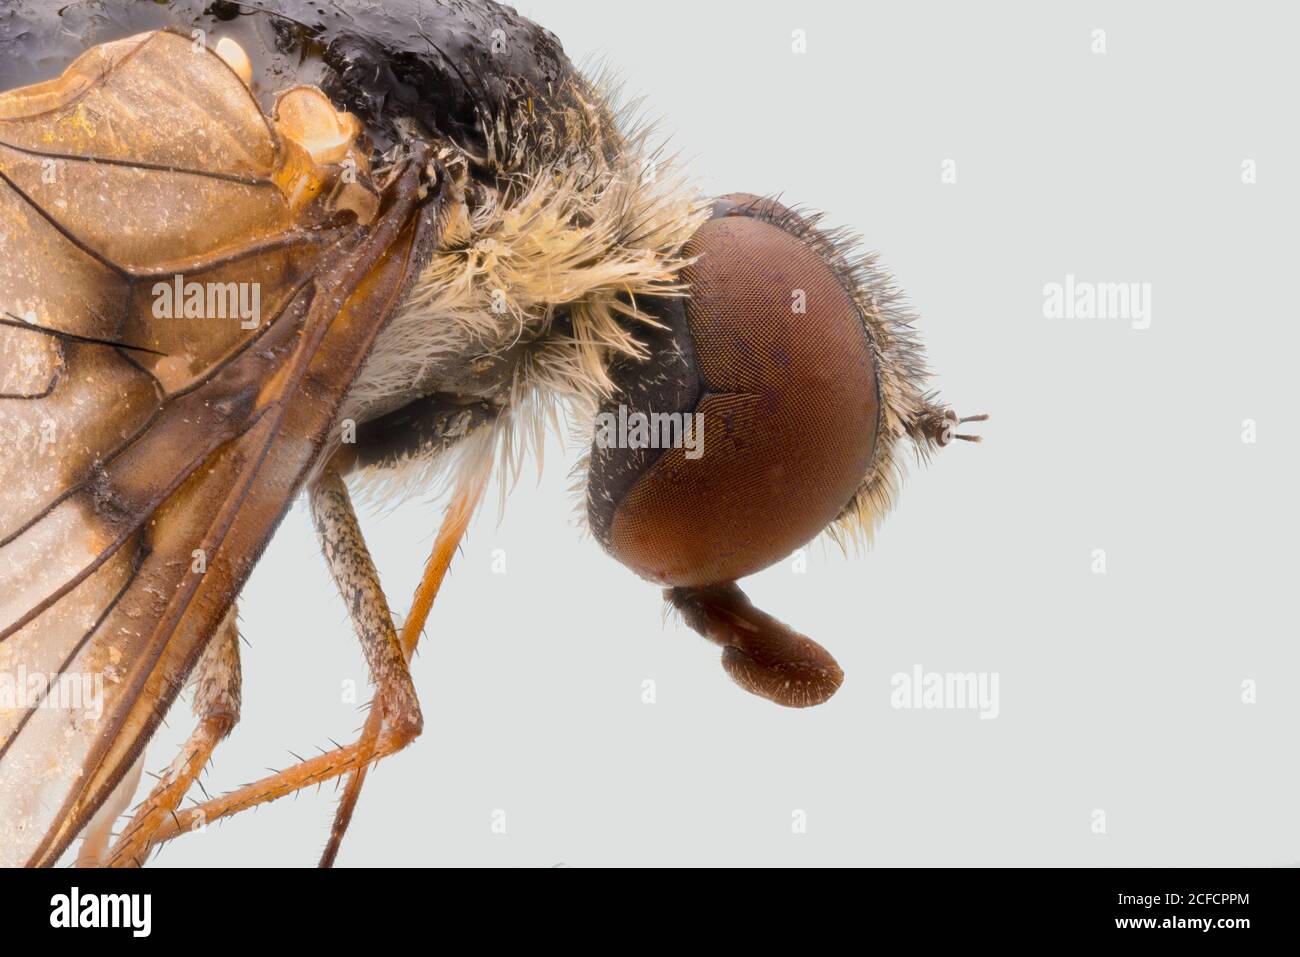 Vista laterale in primo piano della mosca marrone ingrandita con occhi grandi e alette trasparenti Foto Stock